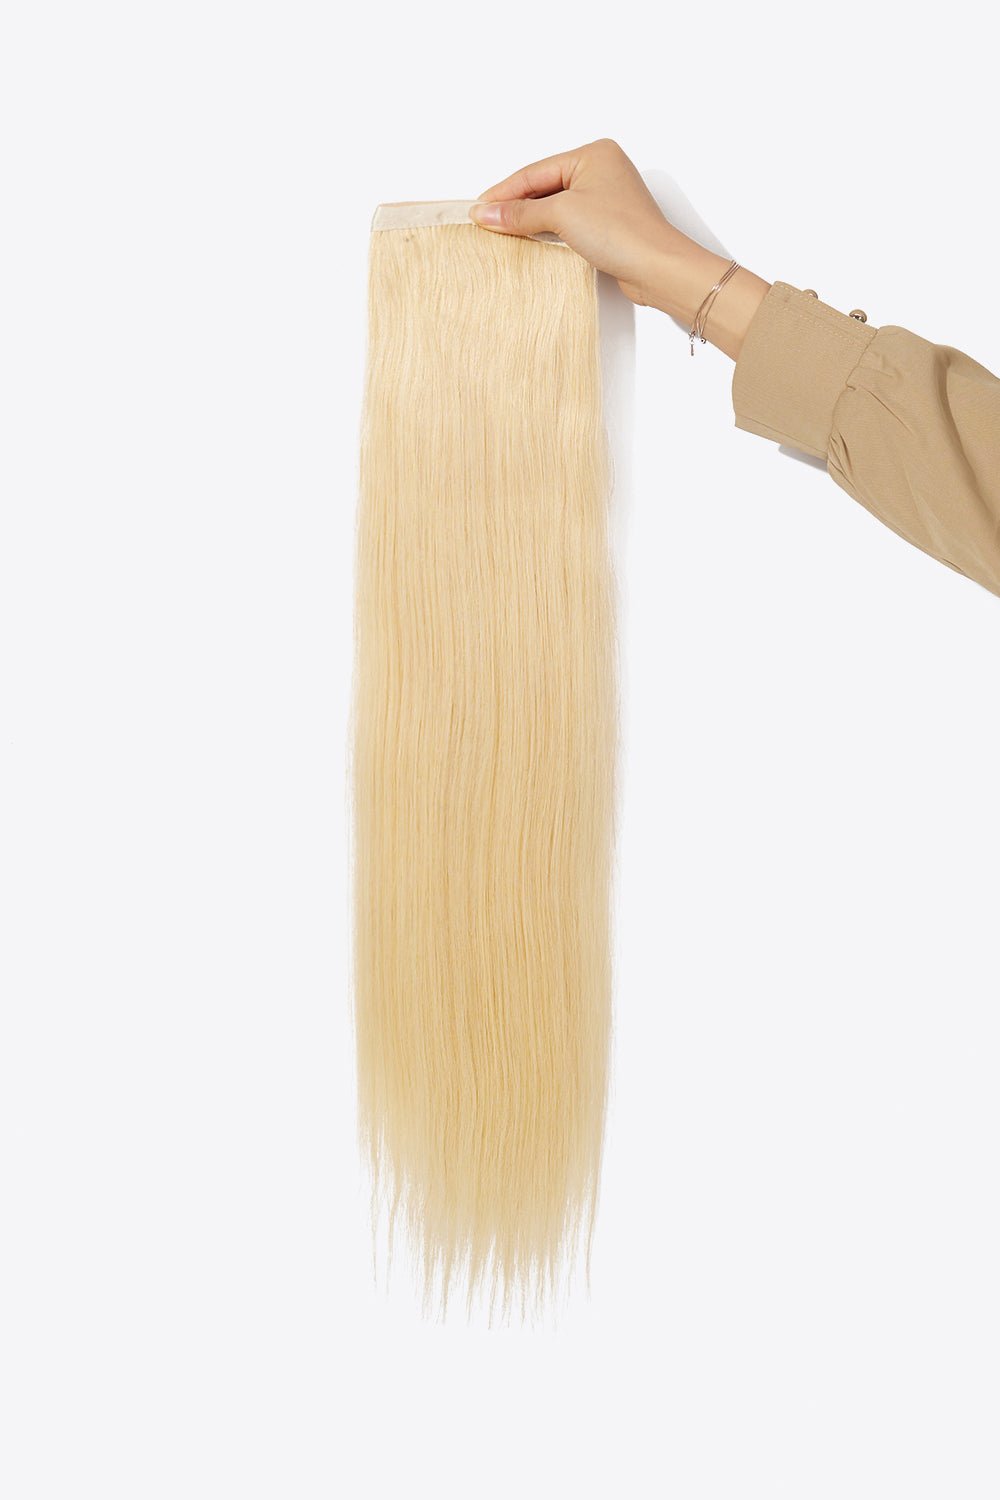 24" 130g Ponytail Long Lasting Human Hair - PINKCOLADA-Beauty-101301484420128